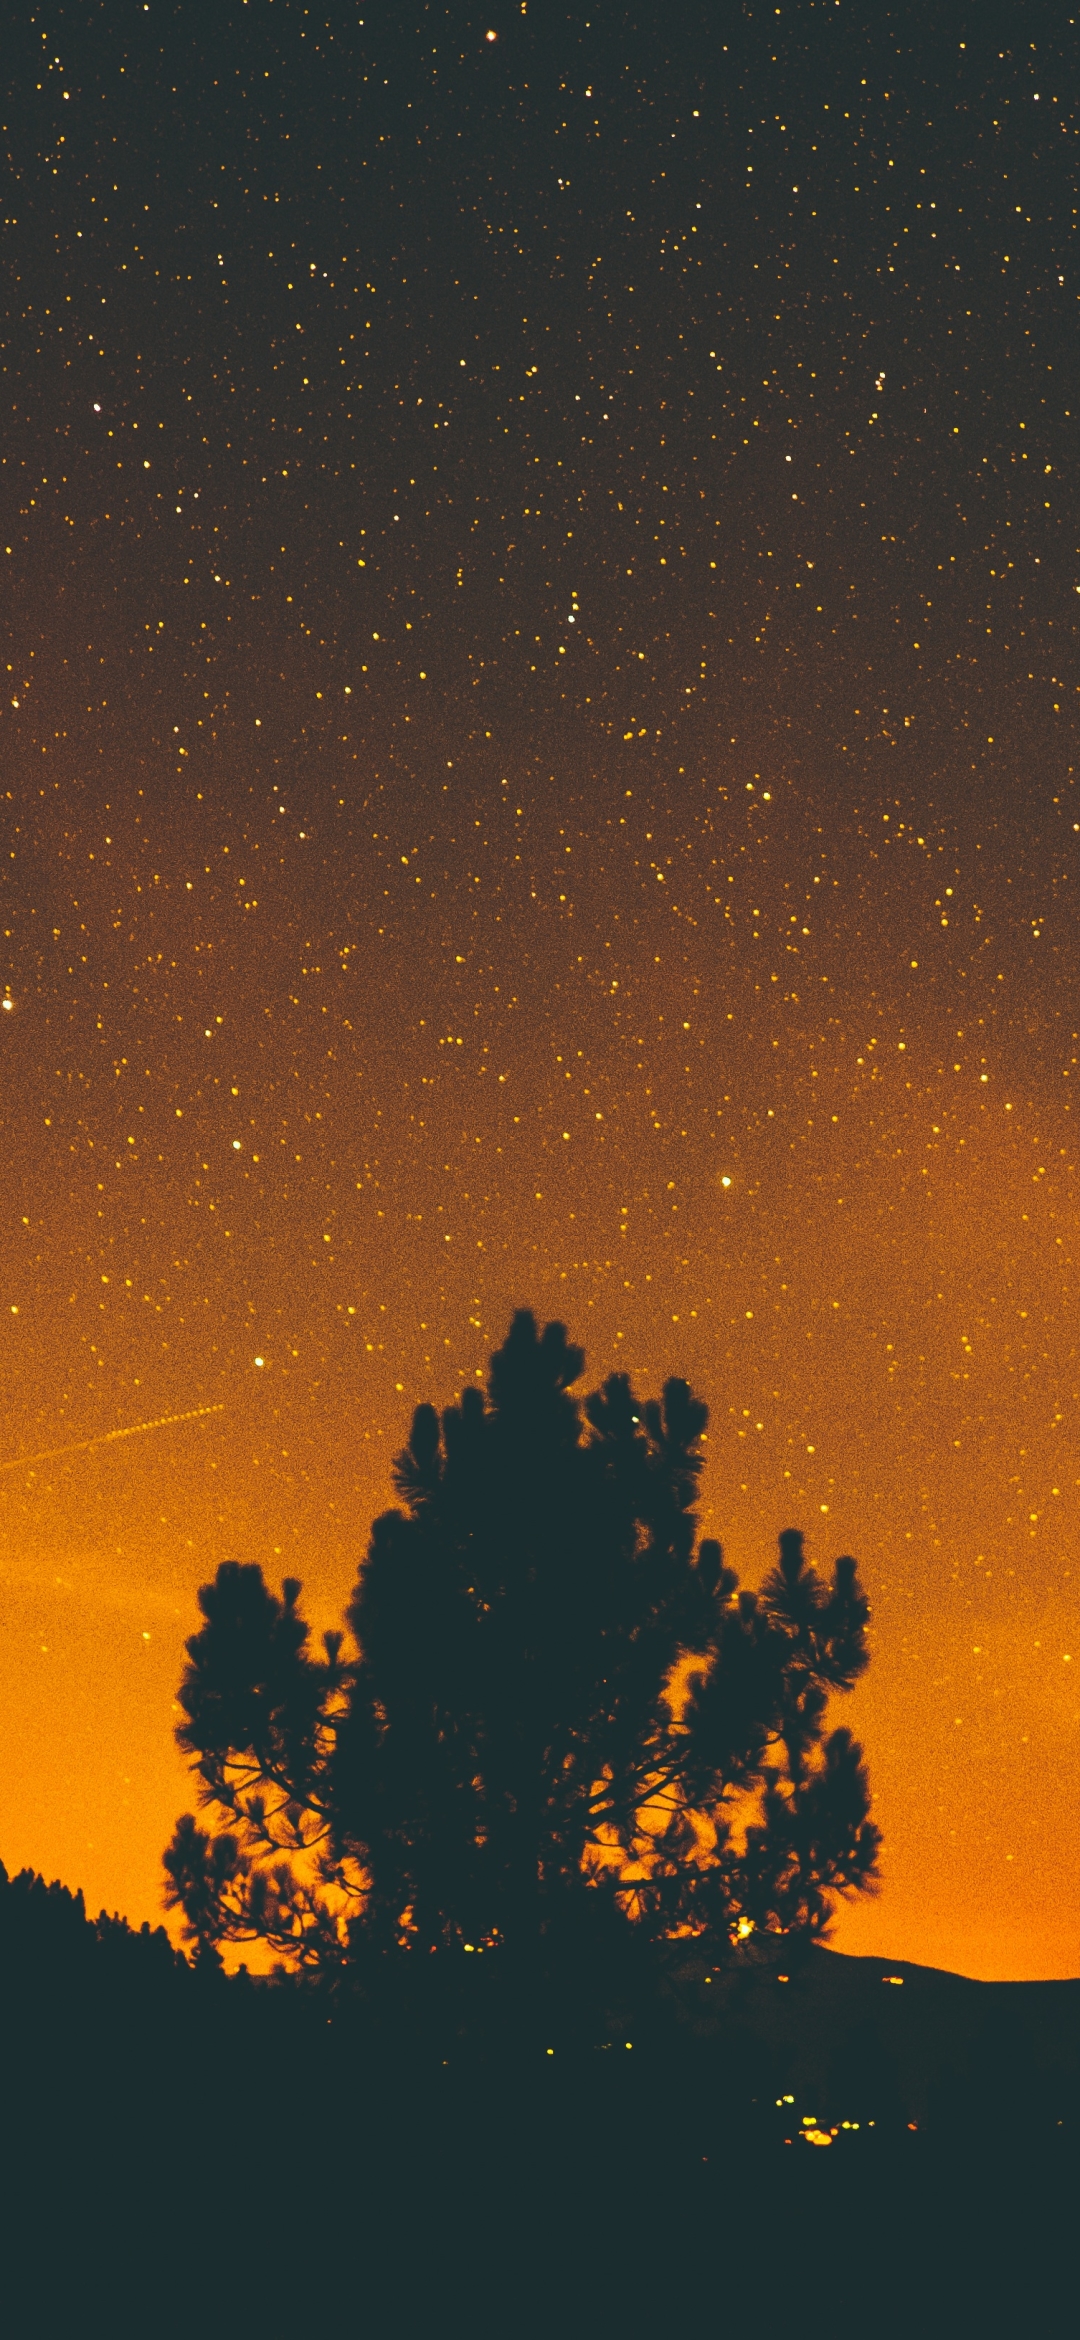 Скачать картинку Небо, Звезды, Ночь, Силуэт, Звездное Небо, Земля/природа, Оранжевый Цвет) в телефон бесплатно.